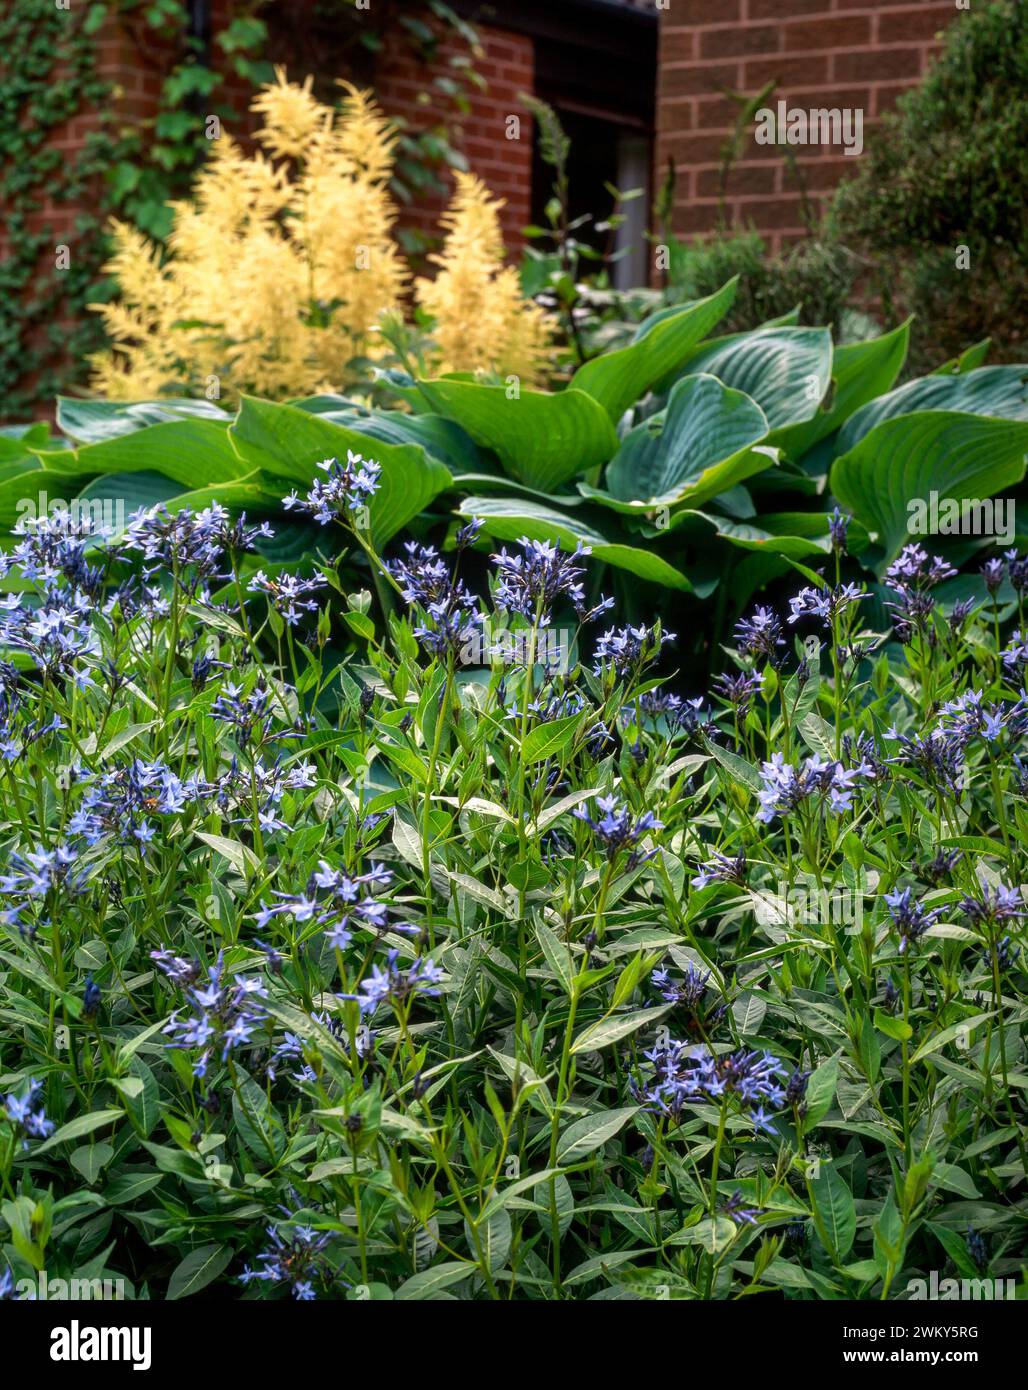 Eastern bluestar (Rhazya Orientalis) mit blauen Blüten und grünen Hosta-Blättern und Astilbe-Blüten dahinter, wächst im englischen Garten im Juni, England Stockfoto